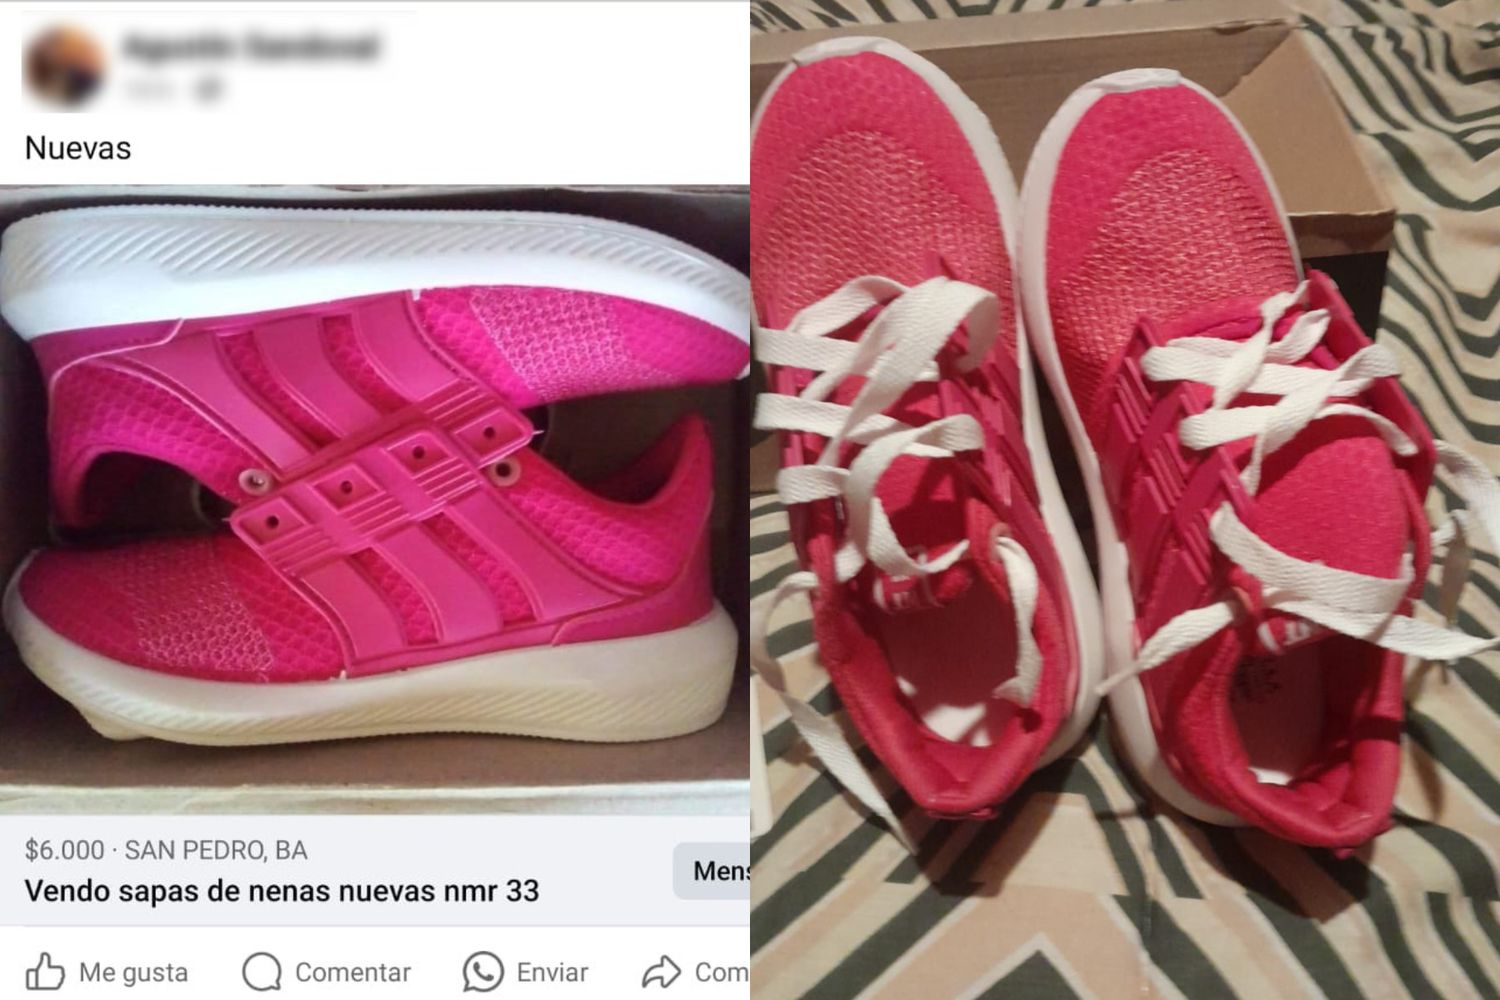 A la izquierda, las que ofrecían en Facebook; a la derecha, las que recibió otra mamá.